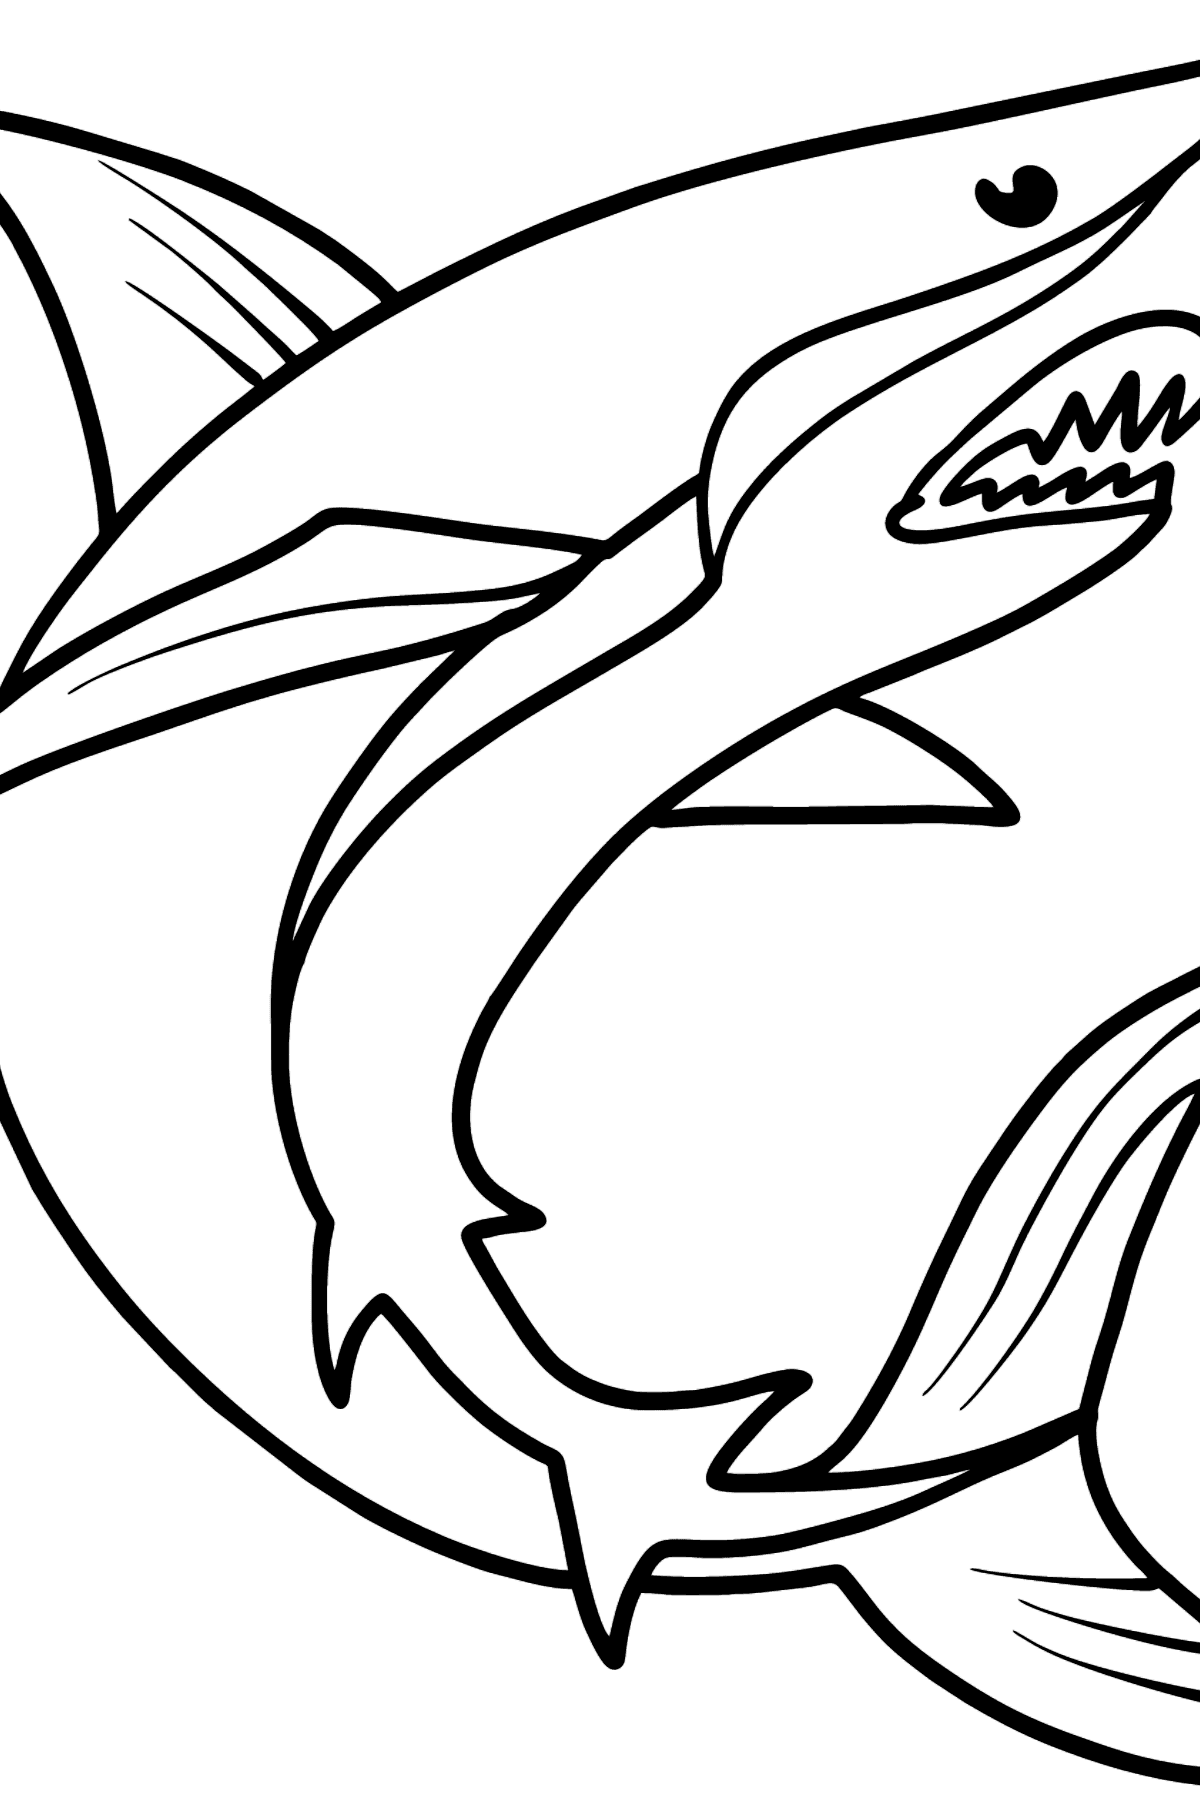 Desen de colorat frumos rechin - Desene de colorat pentru copii